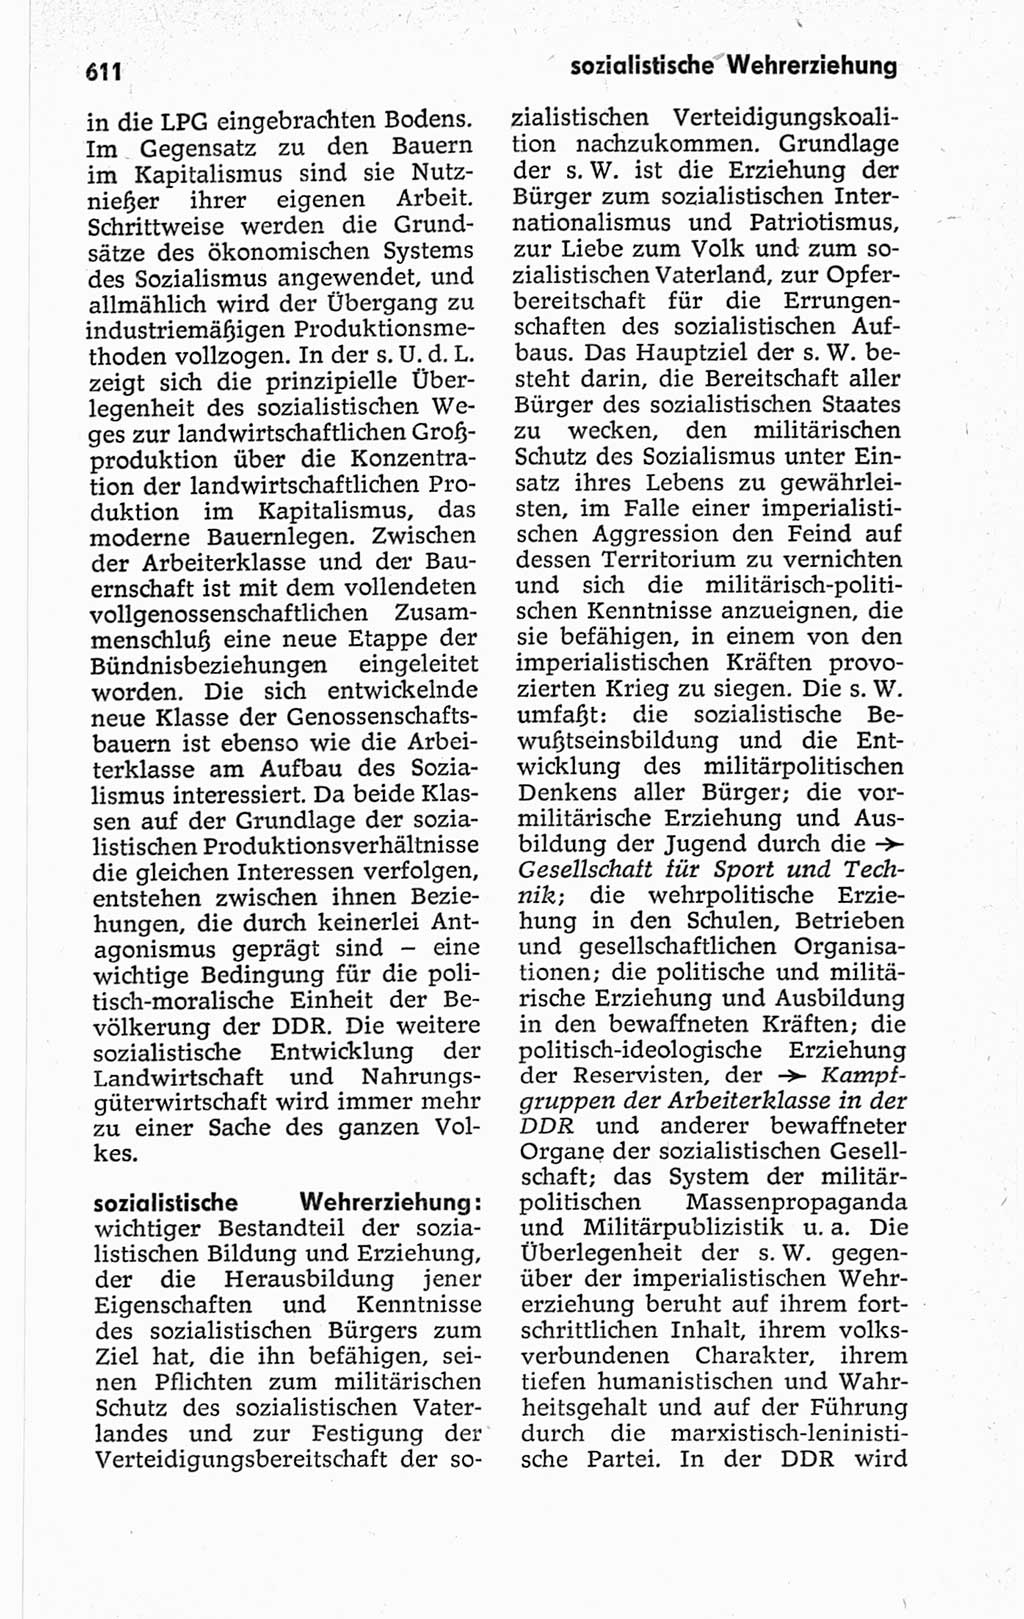 Kleines politisches Wörterbuch [Deutsche Demokratische Republik (DDR)] 1967, Seite 611 (Kl. pol. Wb. DDR 1967, S. 611)